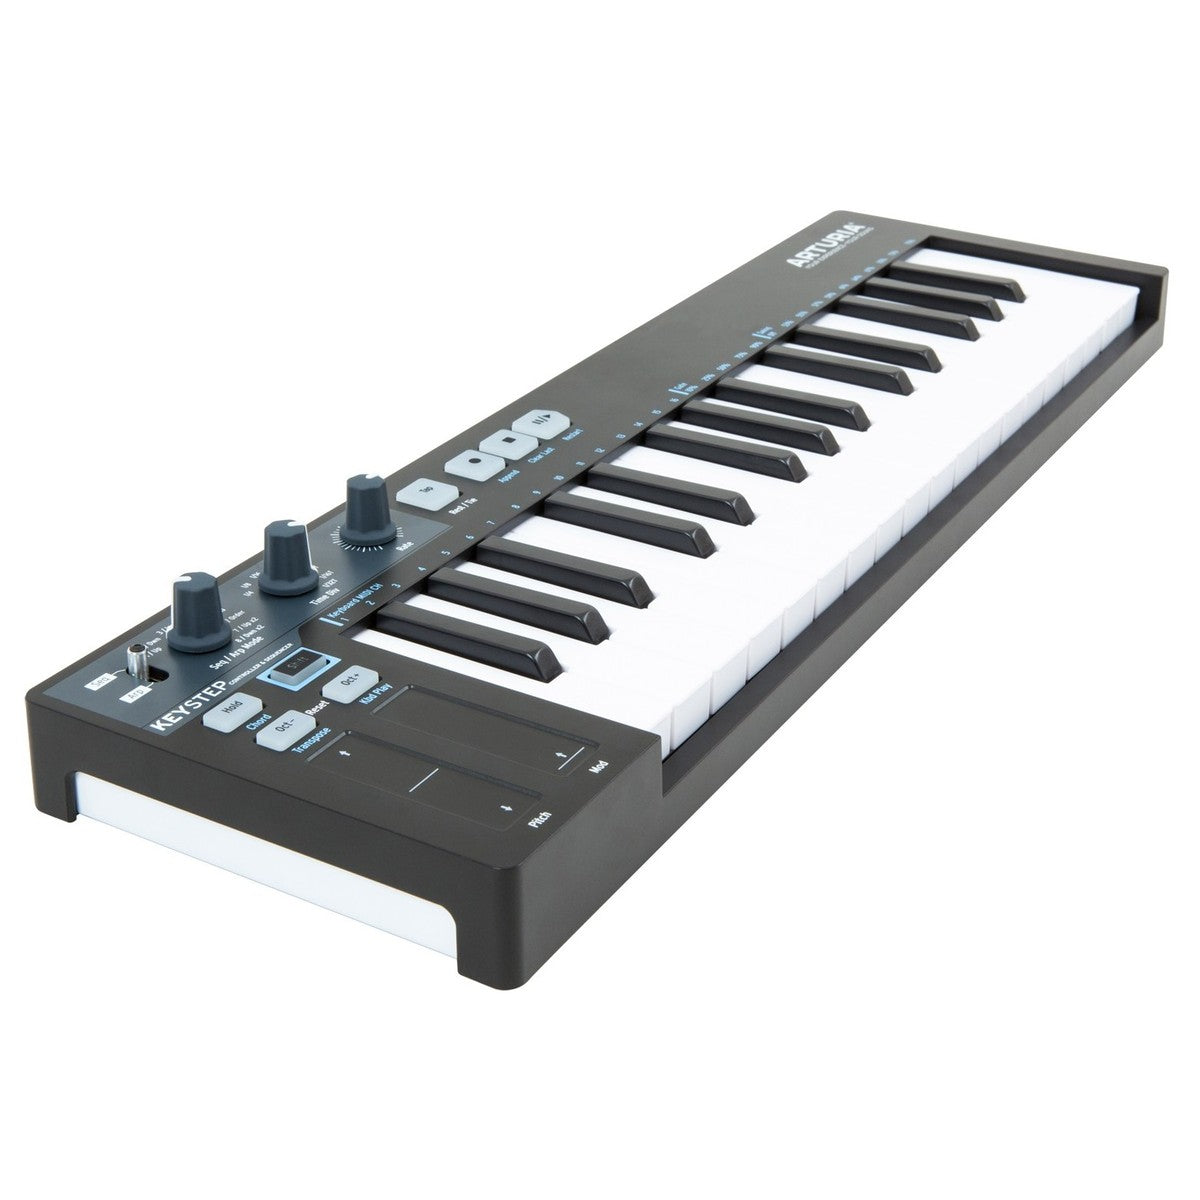 MIDI Keyboard Controller Arturia KeyStep 32